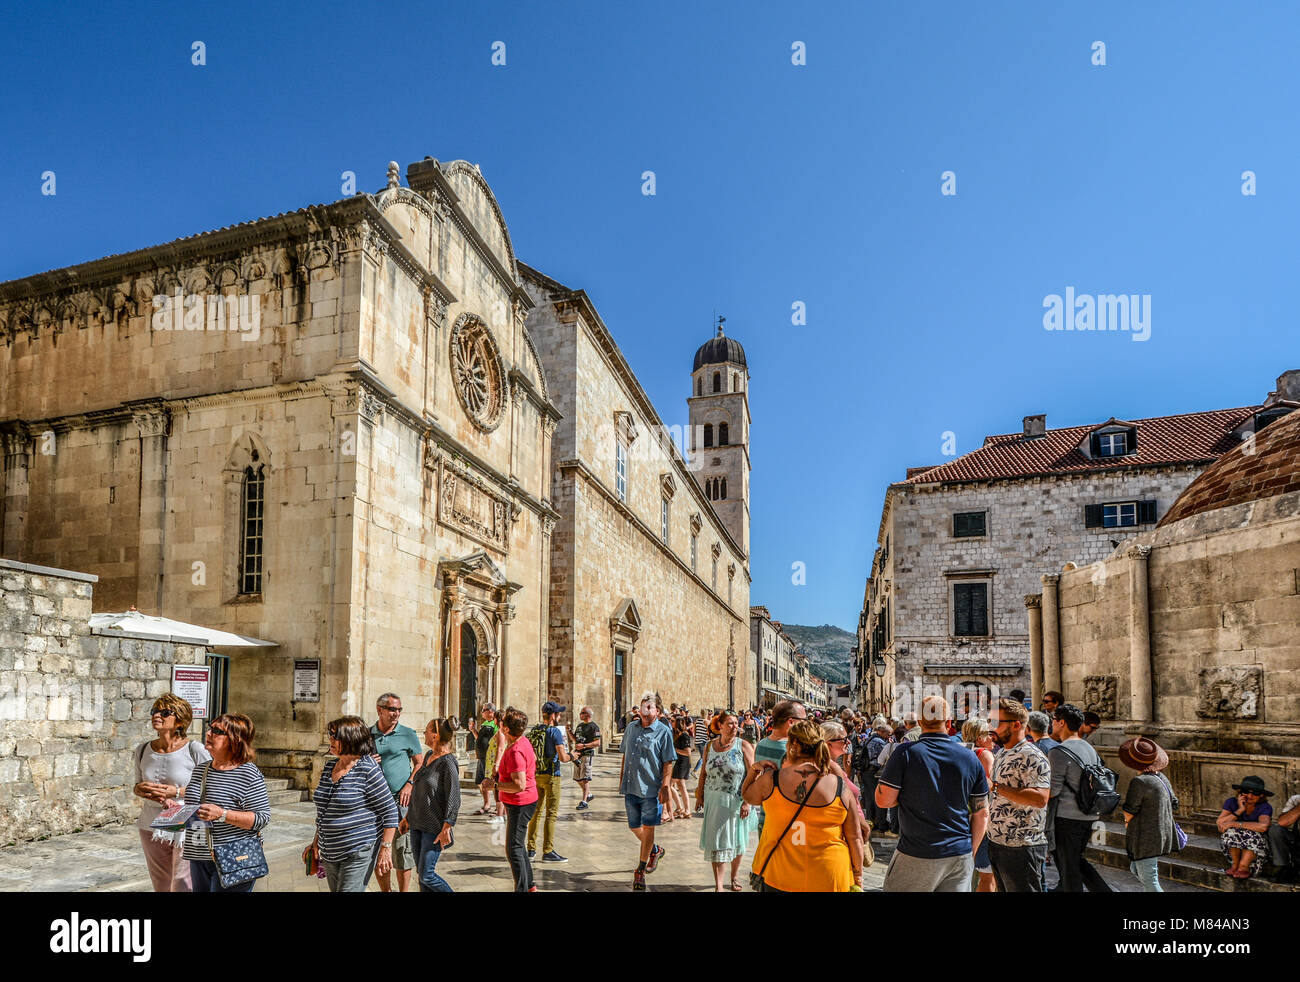 La strada principale, o Stradun Placa nella vecchia città di Dubrovnik Croazia in una giornata di sole con la folla di turisti che si godono il calore estivo Foto Stock